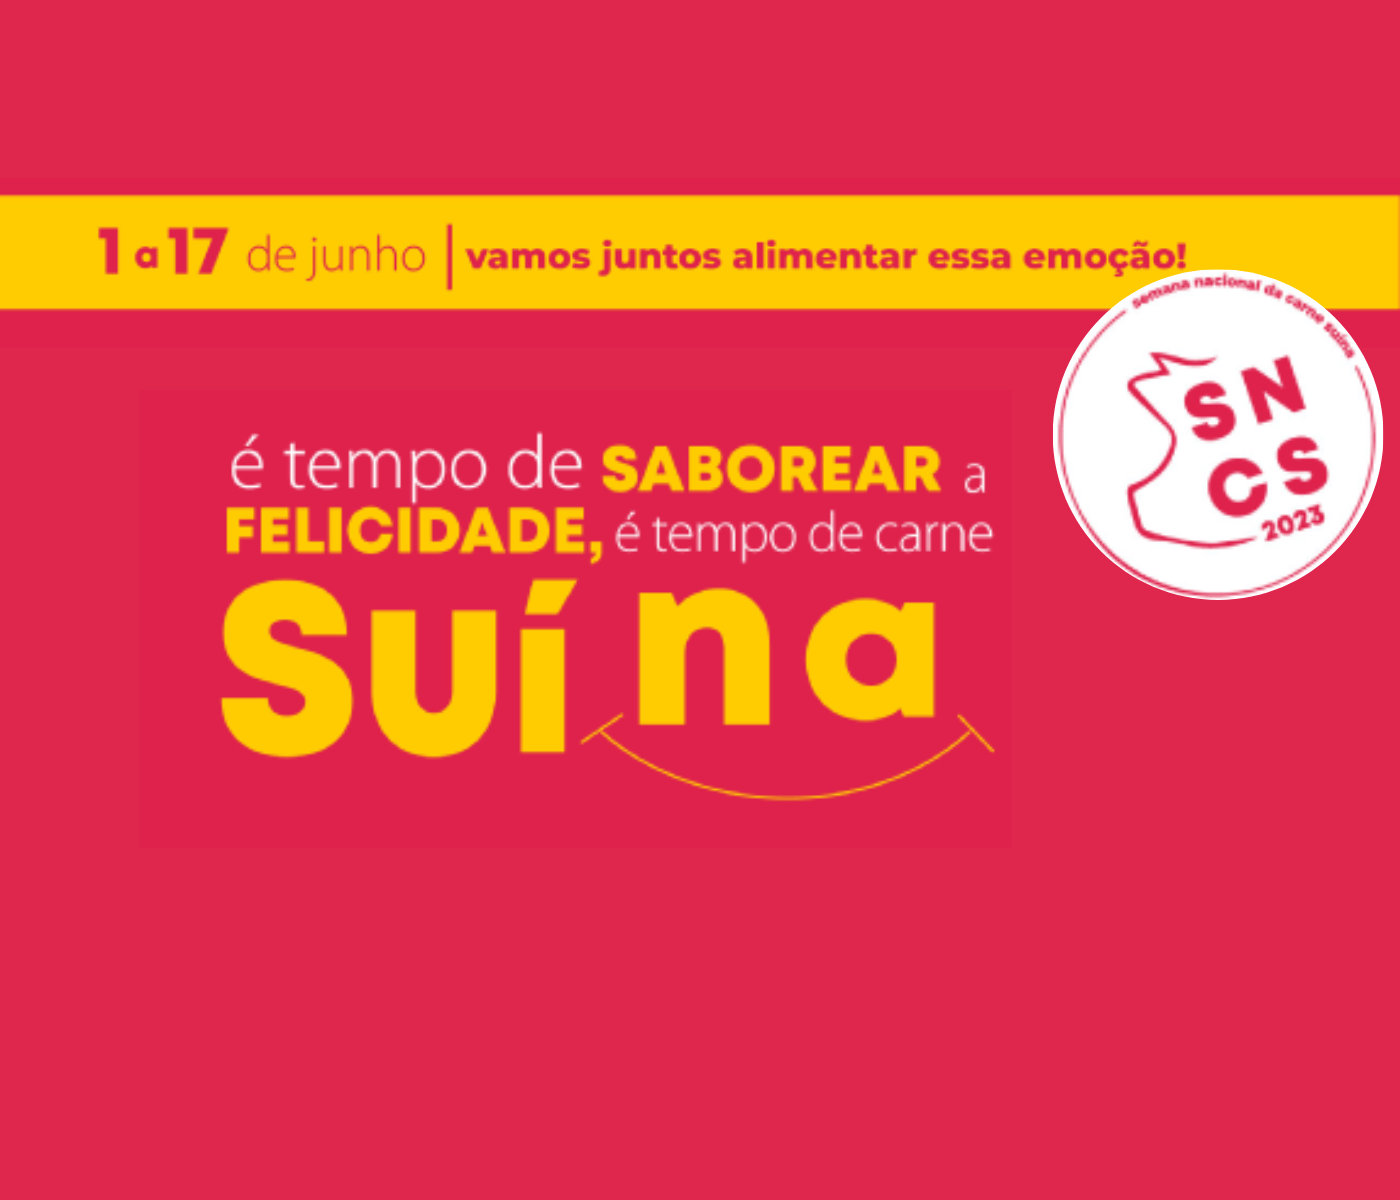 SNCS garante espaço para carne suína no varejo brasileiro e beneficia toda a cadeia de valor